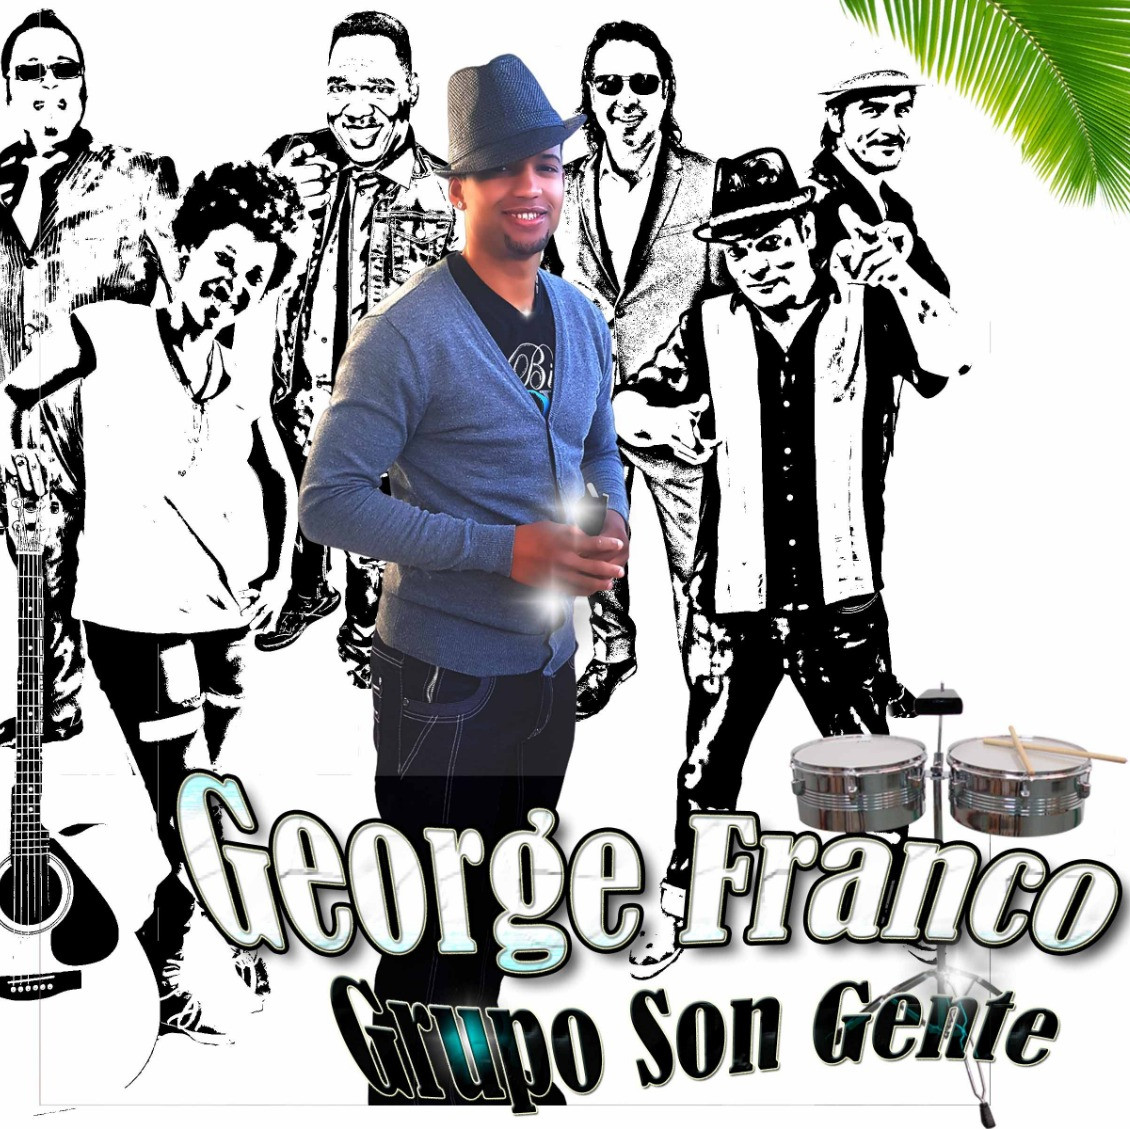 George Franco Gruppo Son Gente